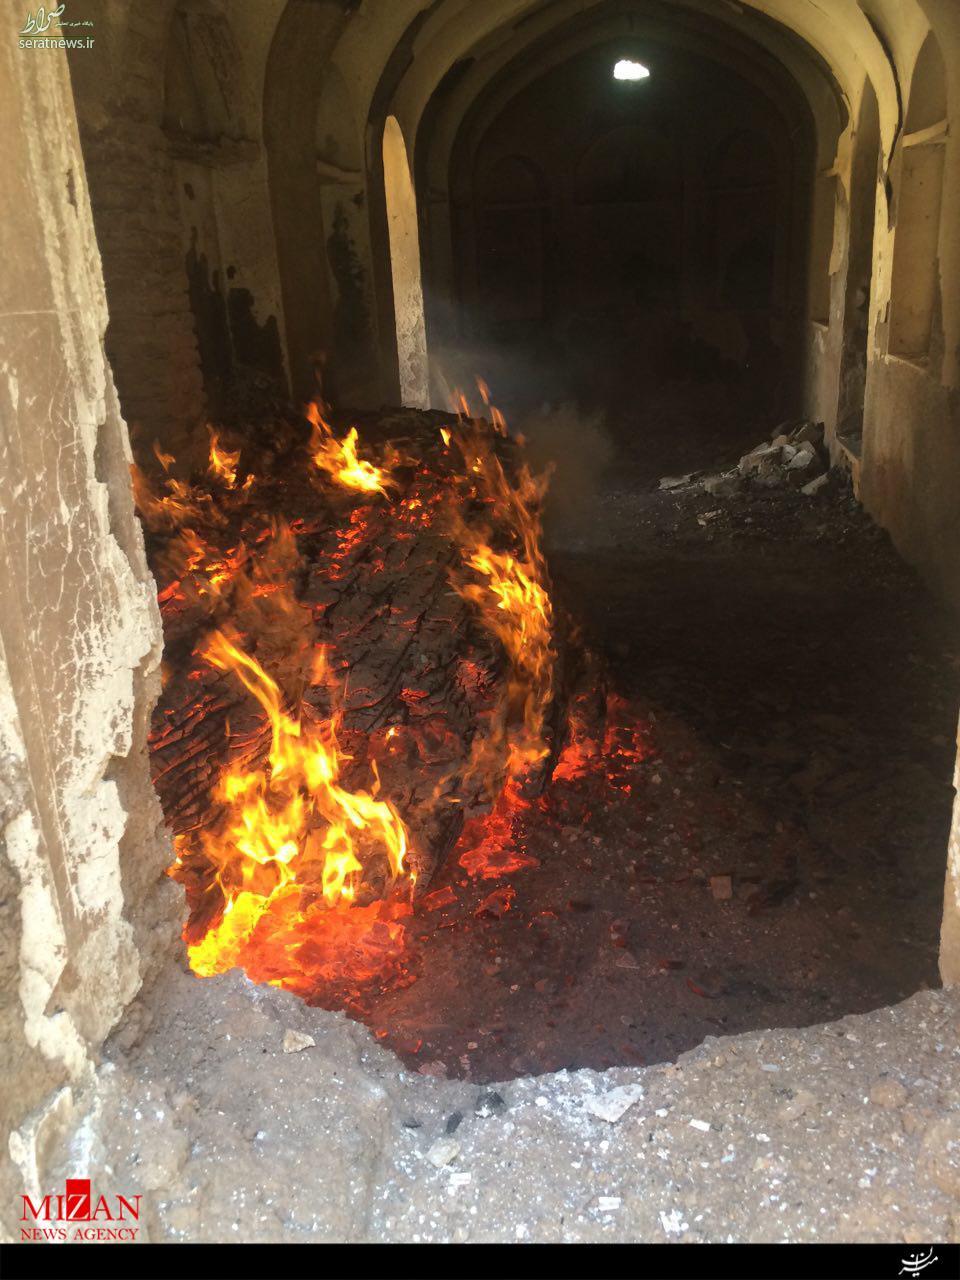 تکرار فاجعه خانه نائل در اصفهان/ بازداشت دو نفر در رابطه با آتش سوزی کاخ سرهنگ آباد + تصاویر